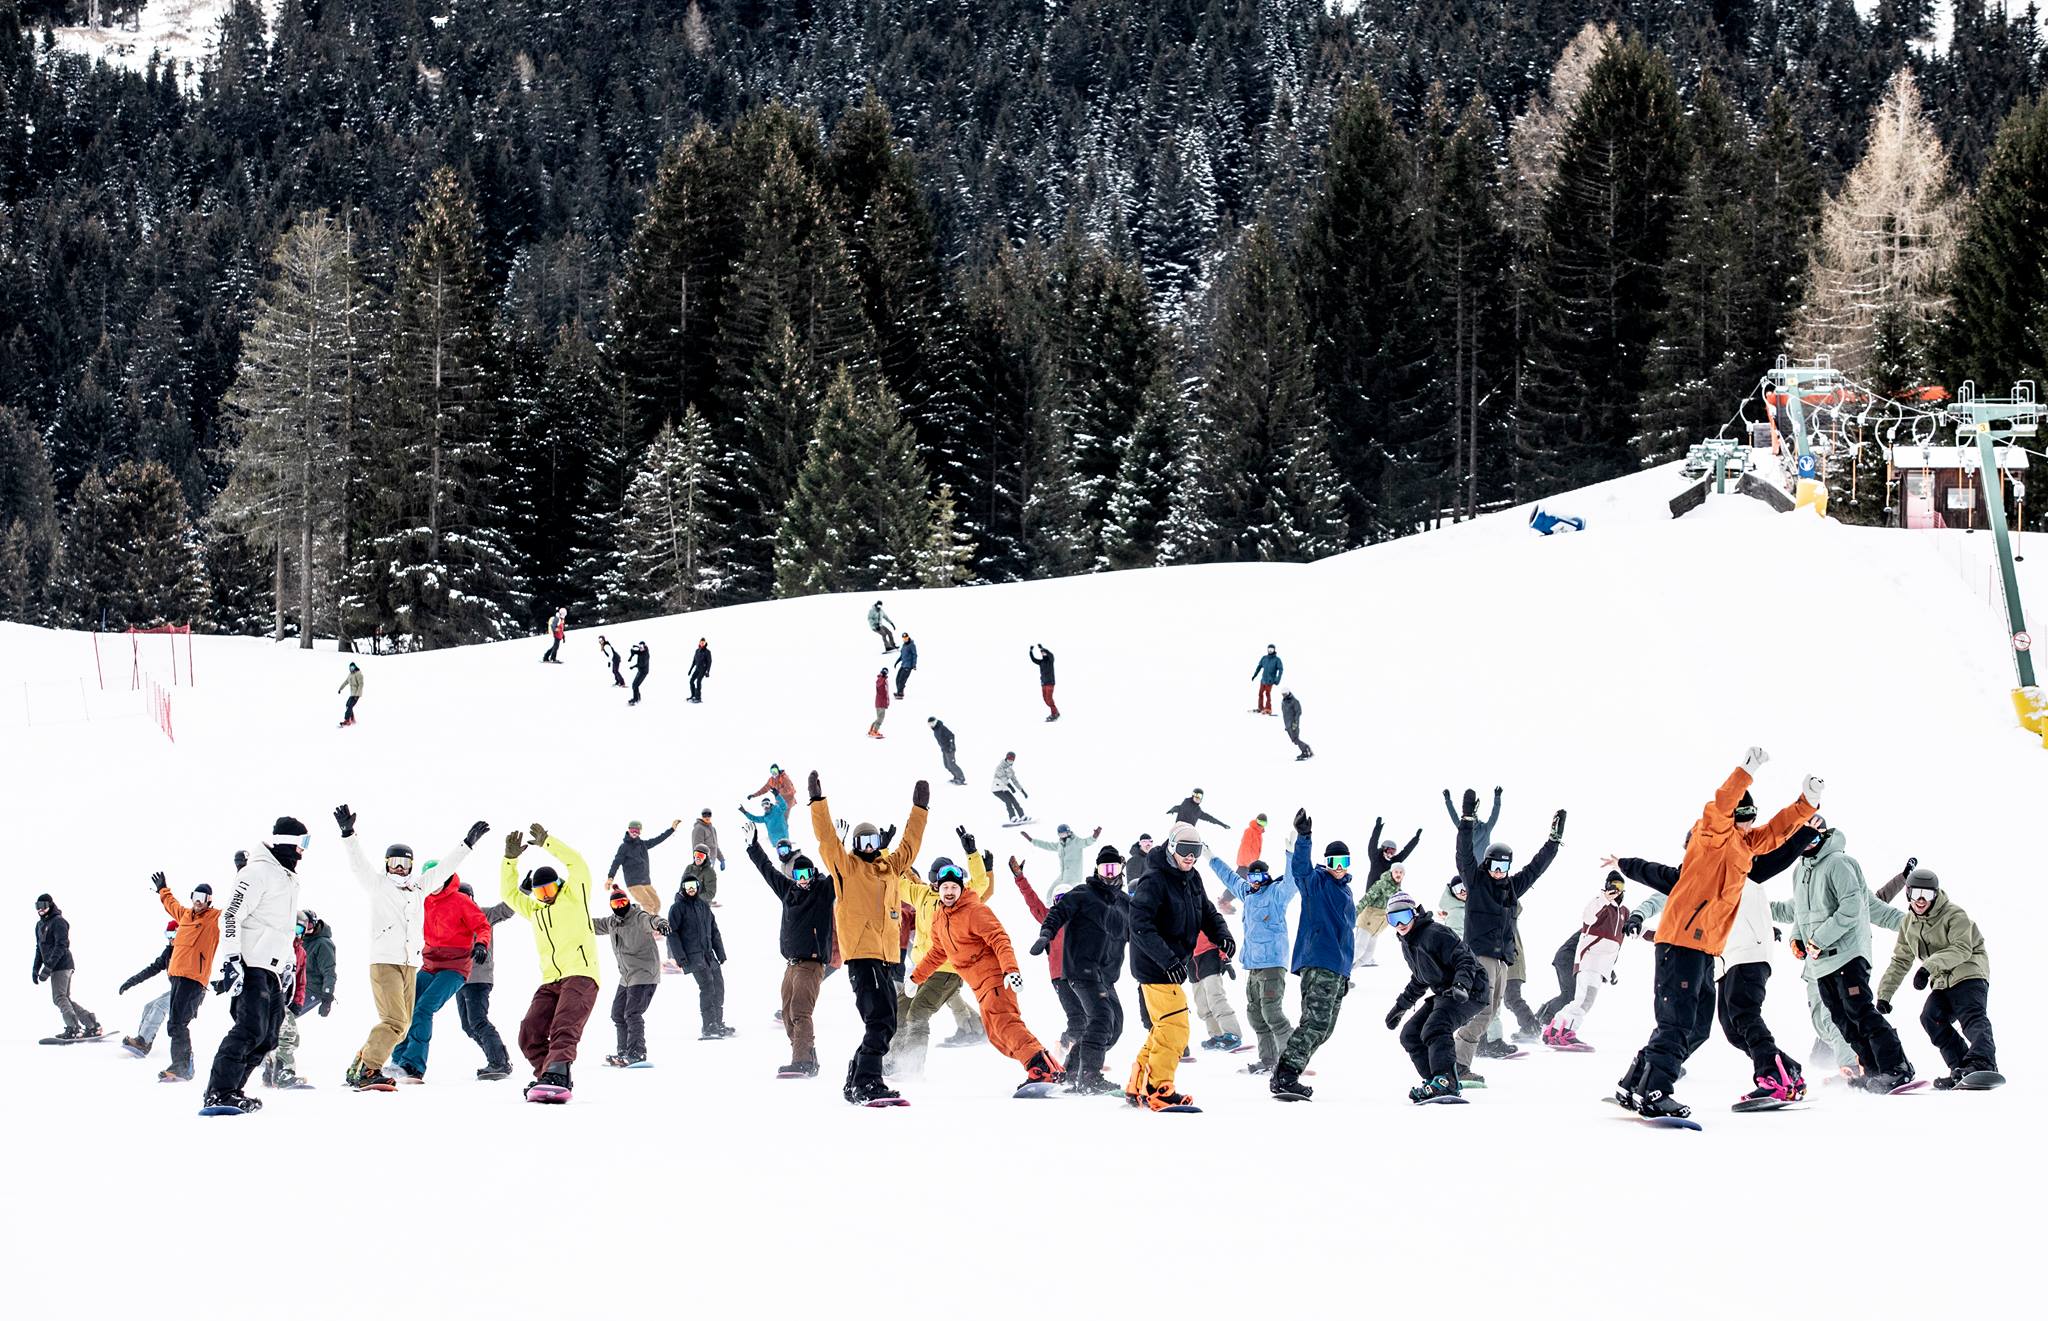 Das Nitro Snowboards Team schaltet mit dir auf „Offline“.